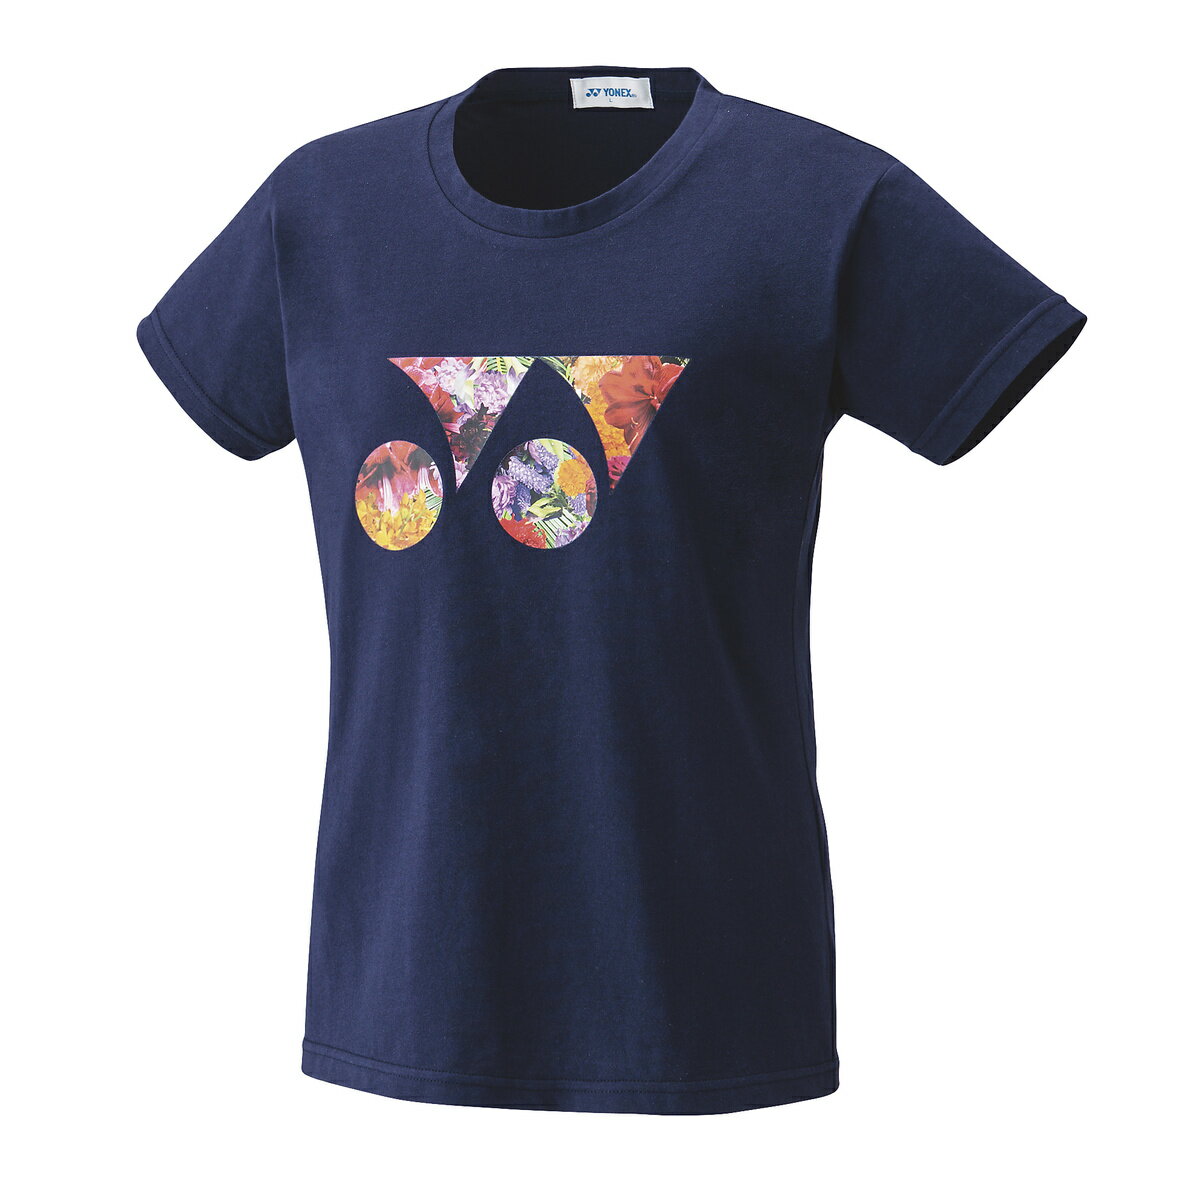 ヨネックス ウィメンズTシャツ 16541 色 : ネイビーブルー サイズ : S